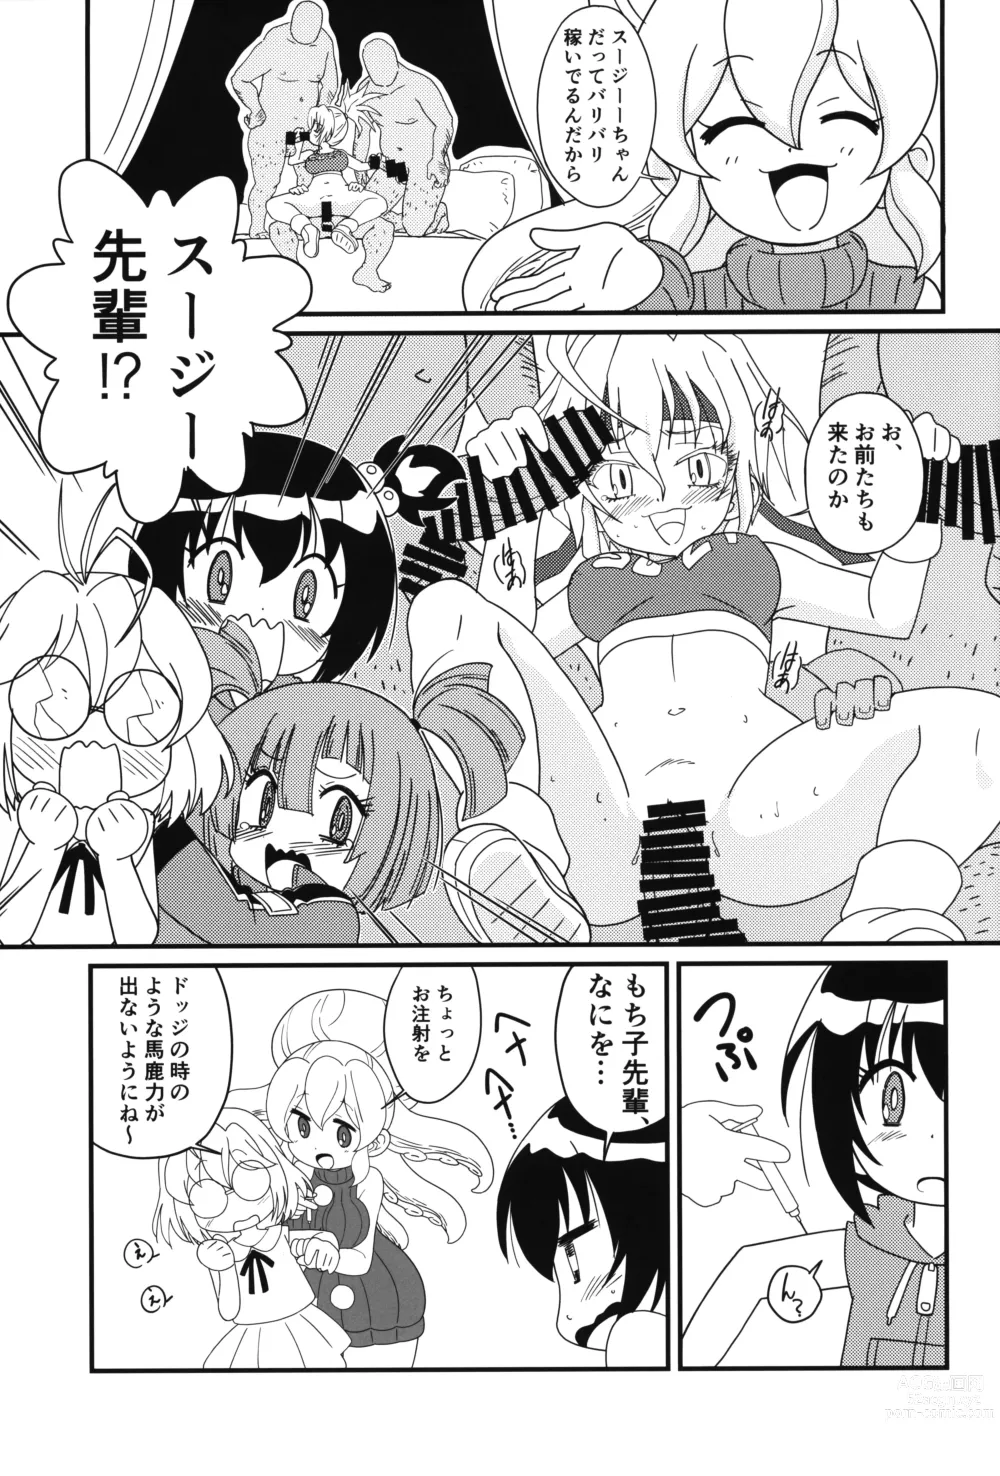 Page 4 of doujinshi Magejun 49